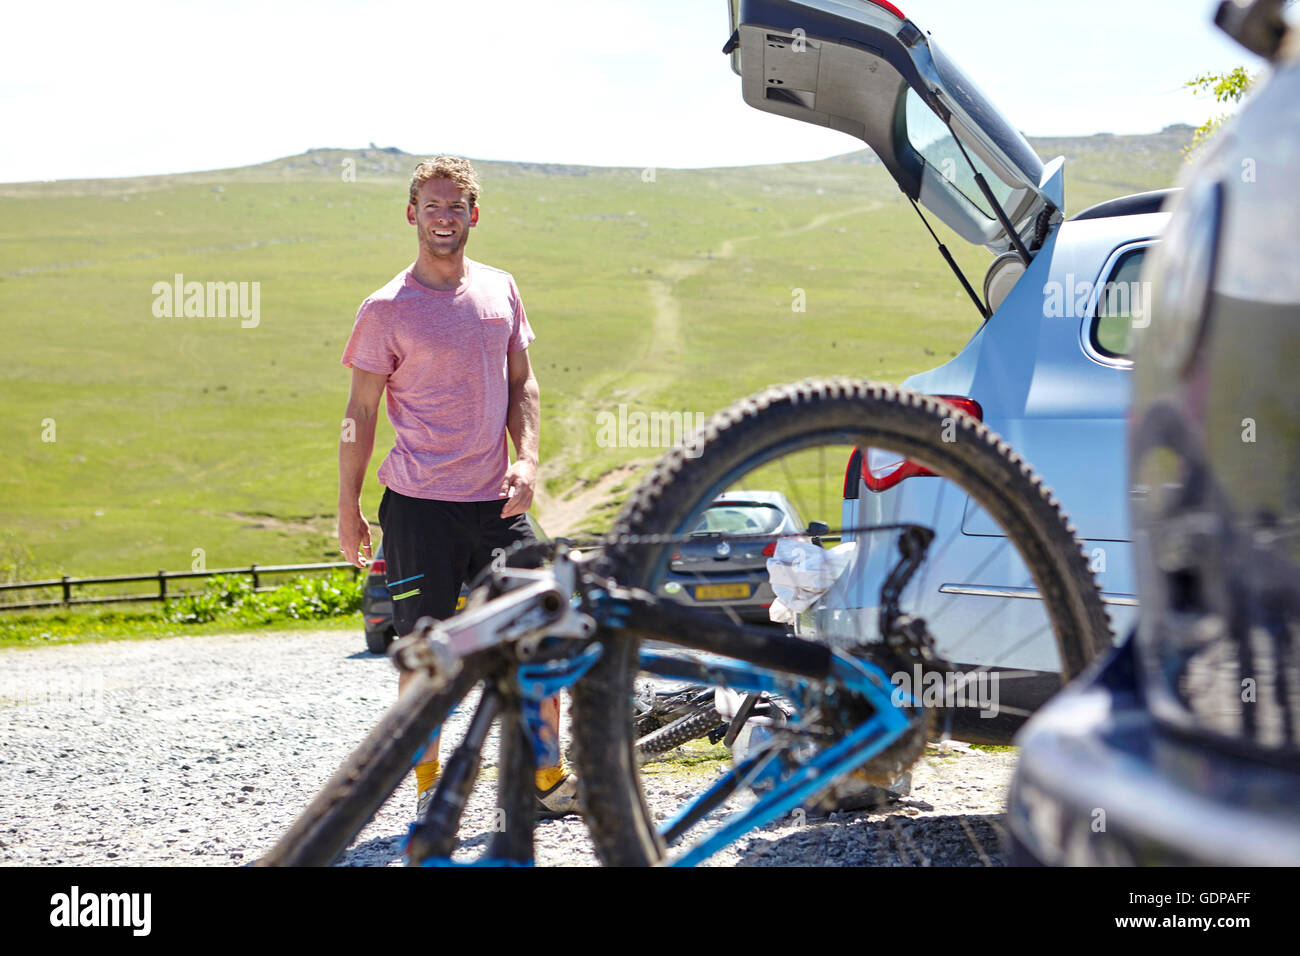 Radfahrer mit Fahrrad von Kofferraum, Blick auf die Kamera zu Lächeln Stockfoto